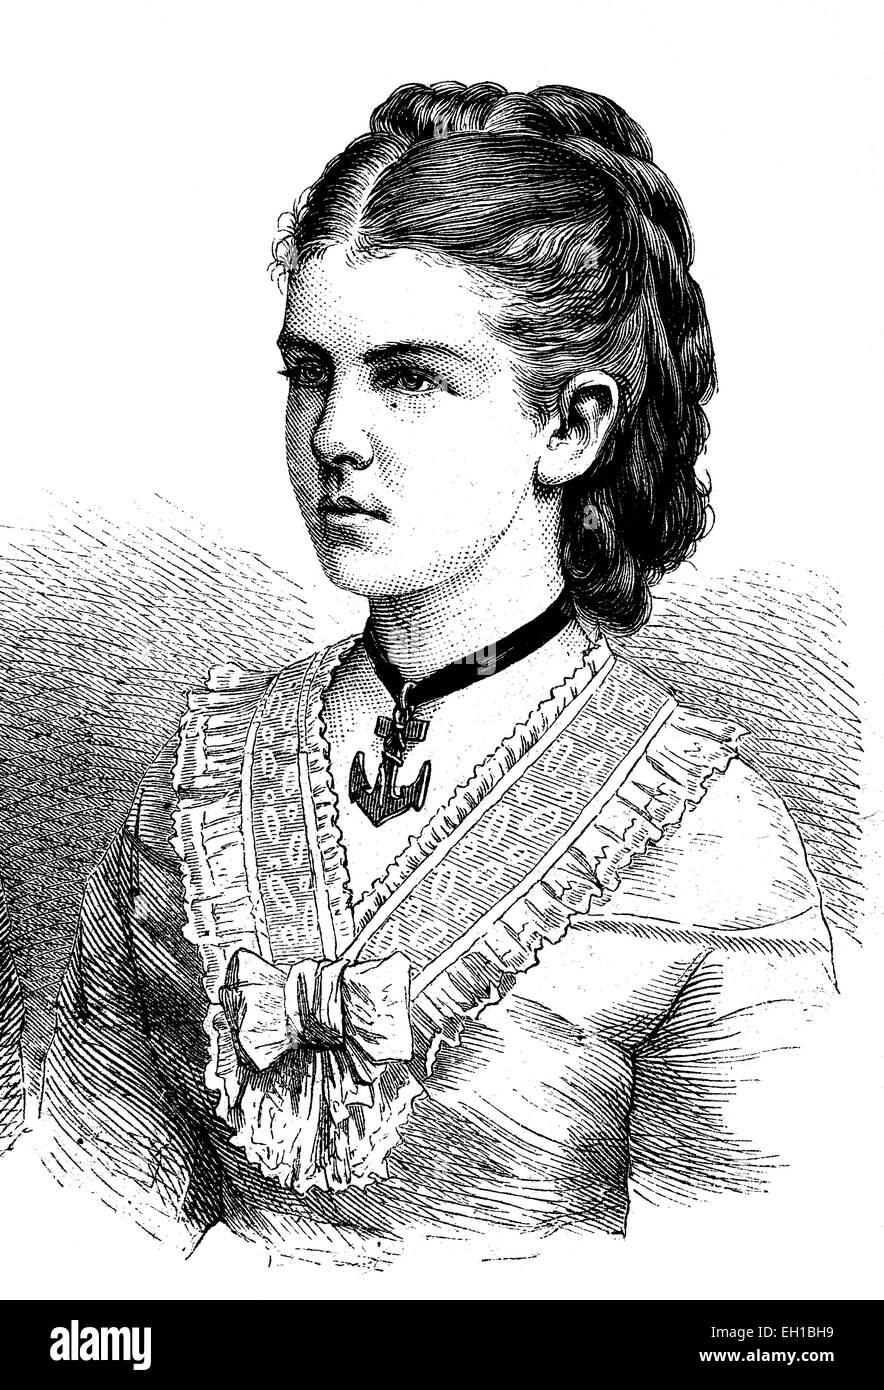 La princesse Elizabeth Anna de Prusse, 1857 - 1895, l'épouse du Grand-duc Friedrich August d'Oldenburg, illustrati historique sur 1877 Banque D'Images